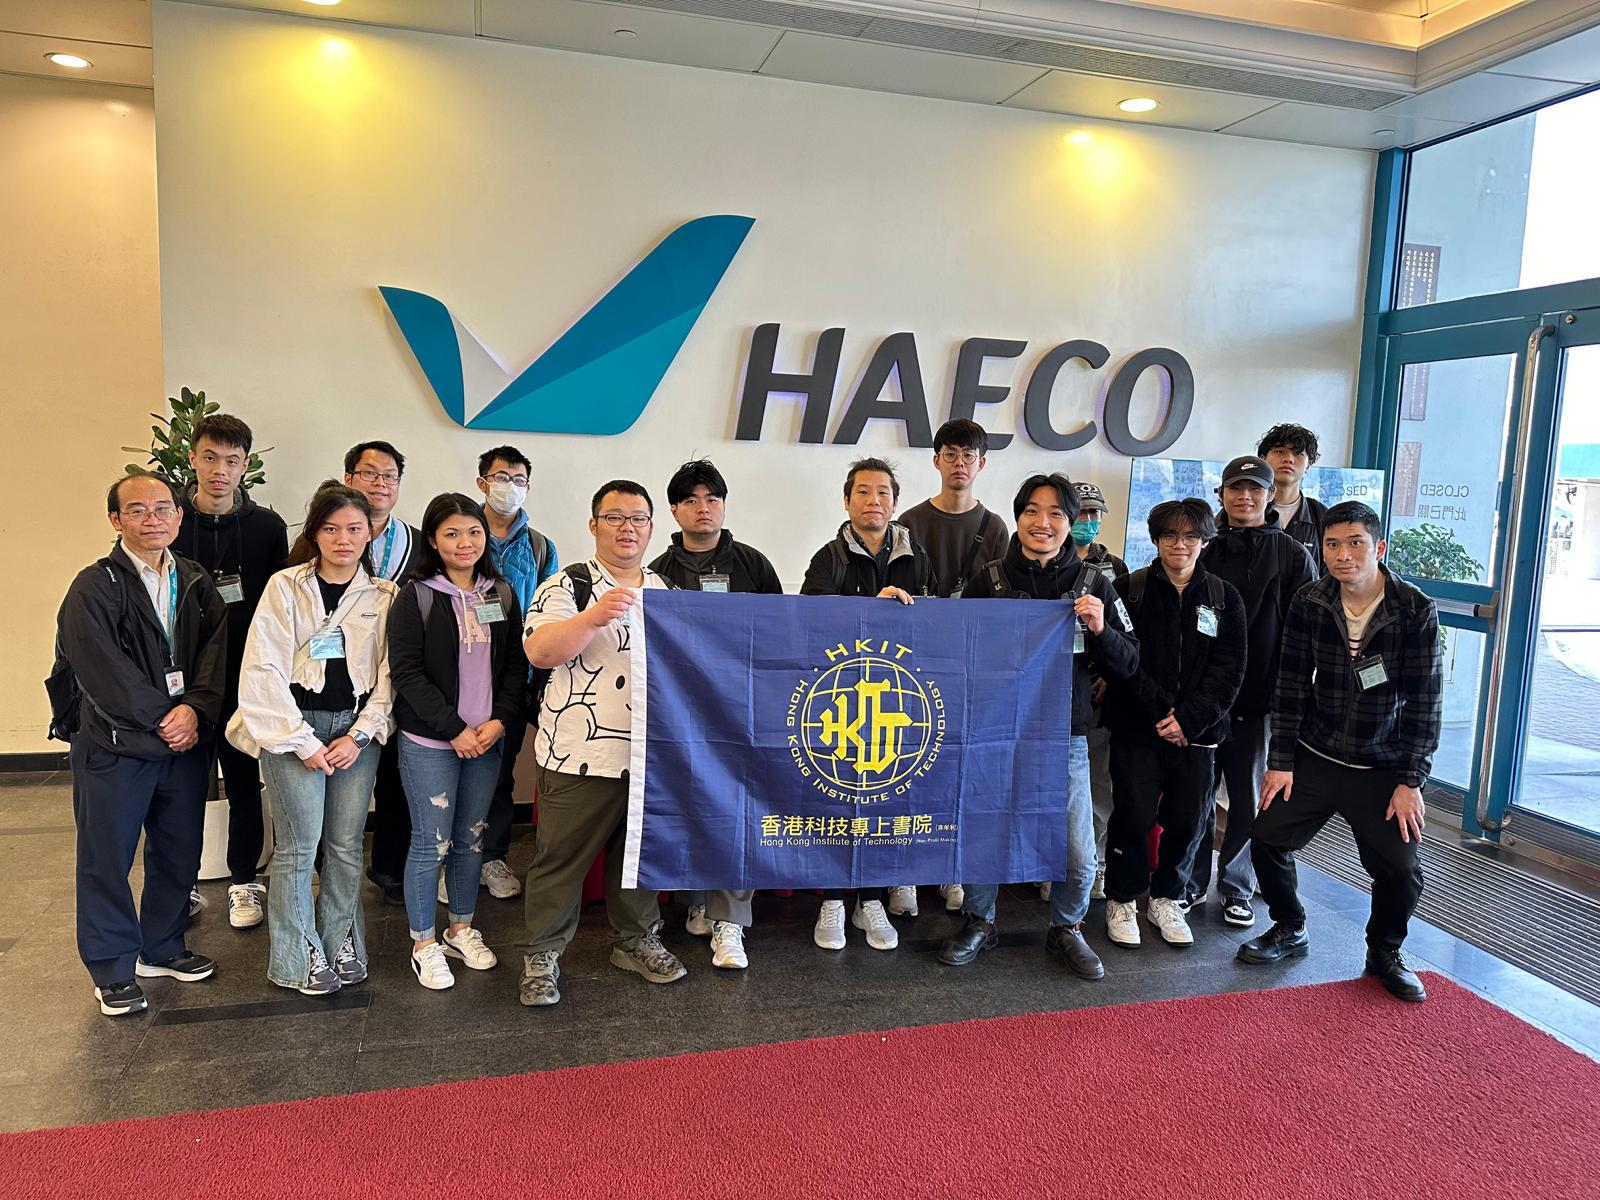 參觀香港飛機工程有限公司(HAECO) 及 中國飛機服務有限公司(CASL)活動花絮